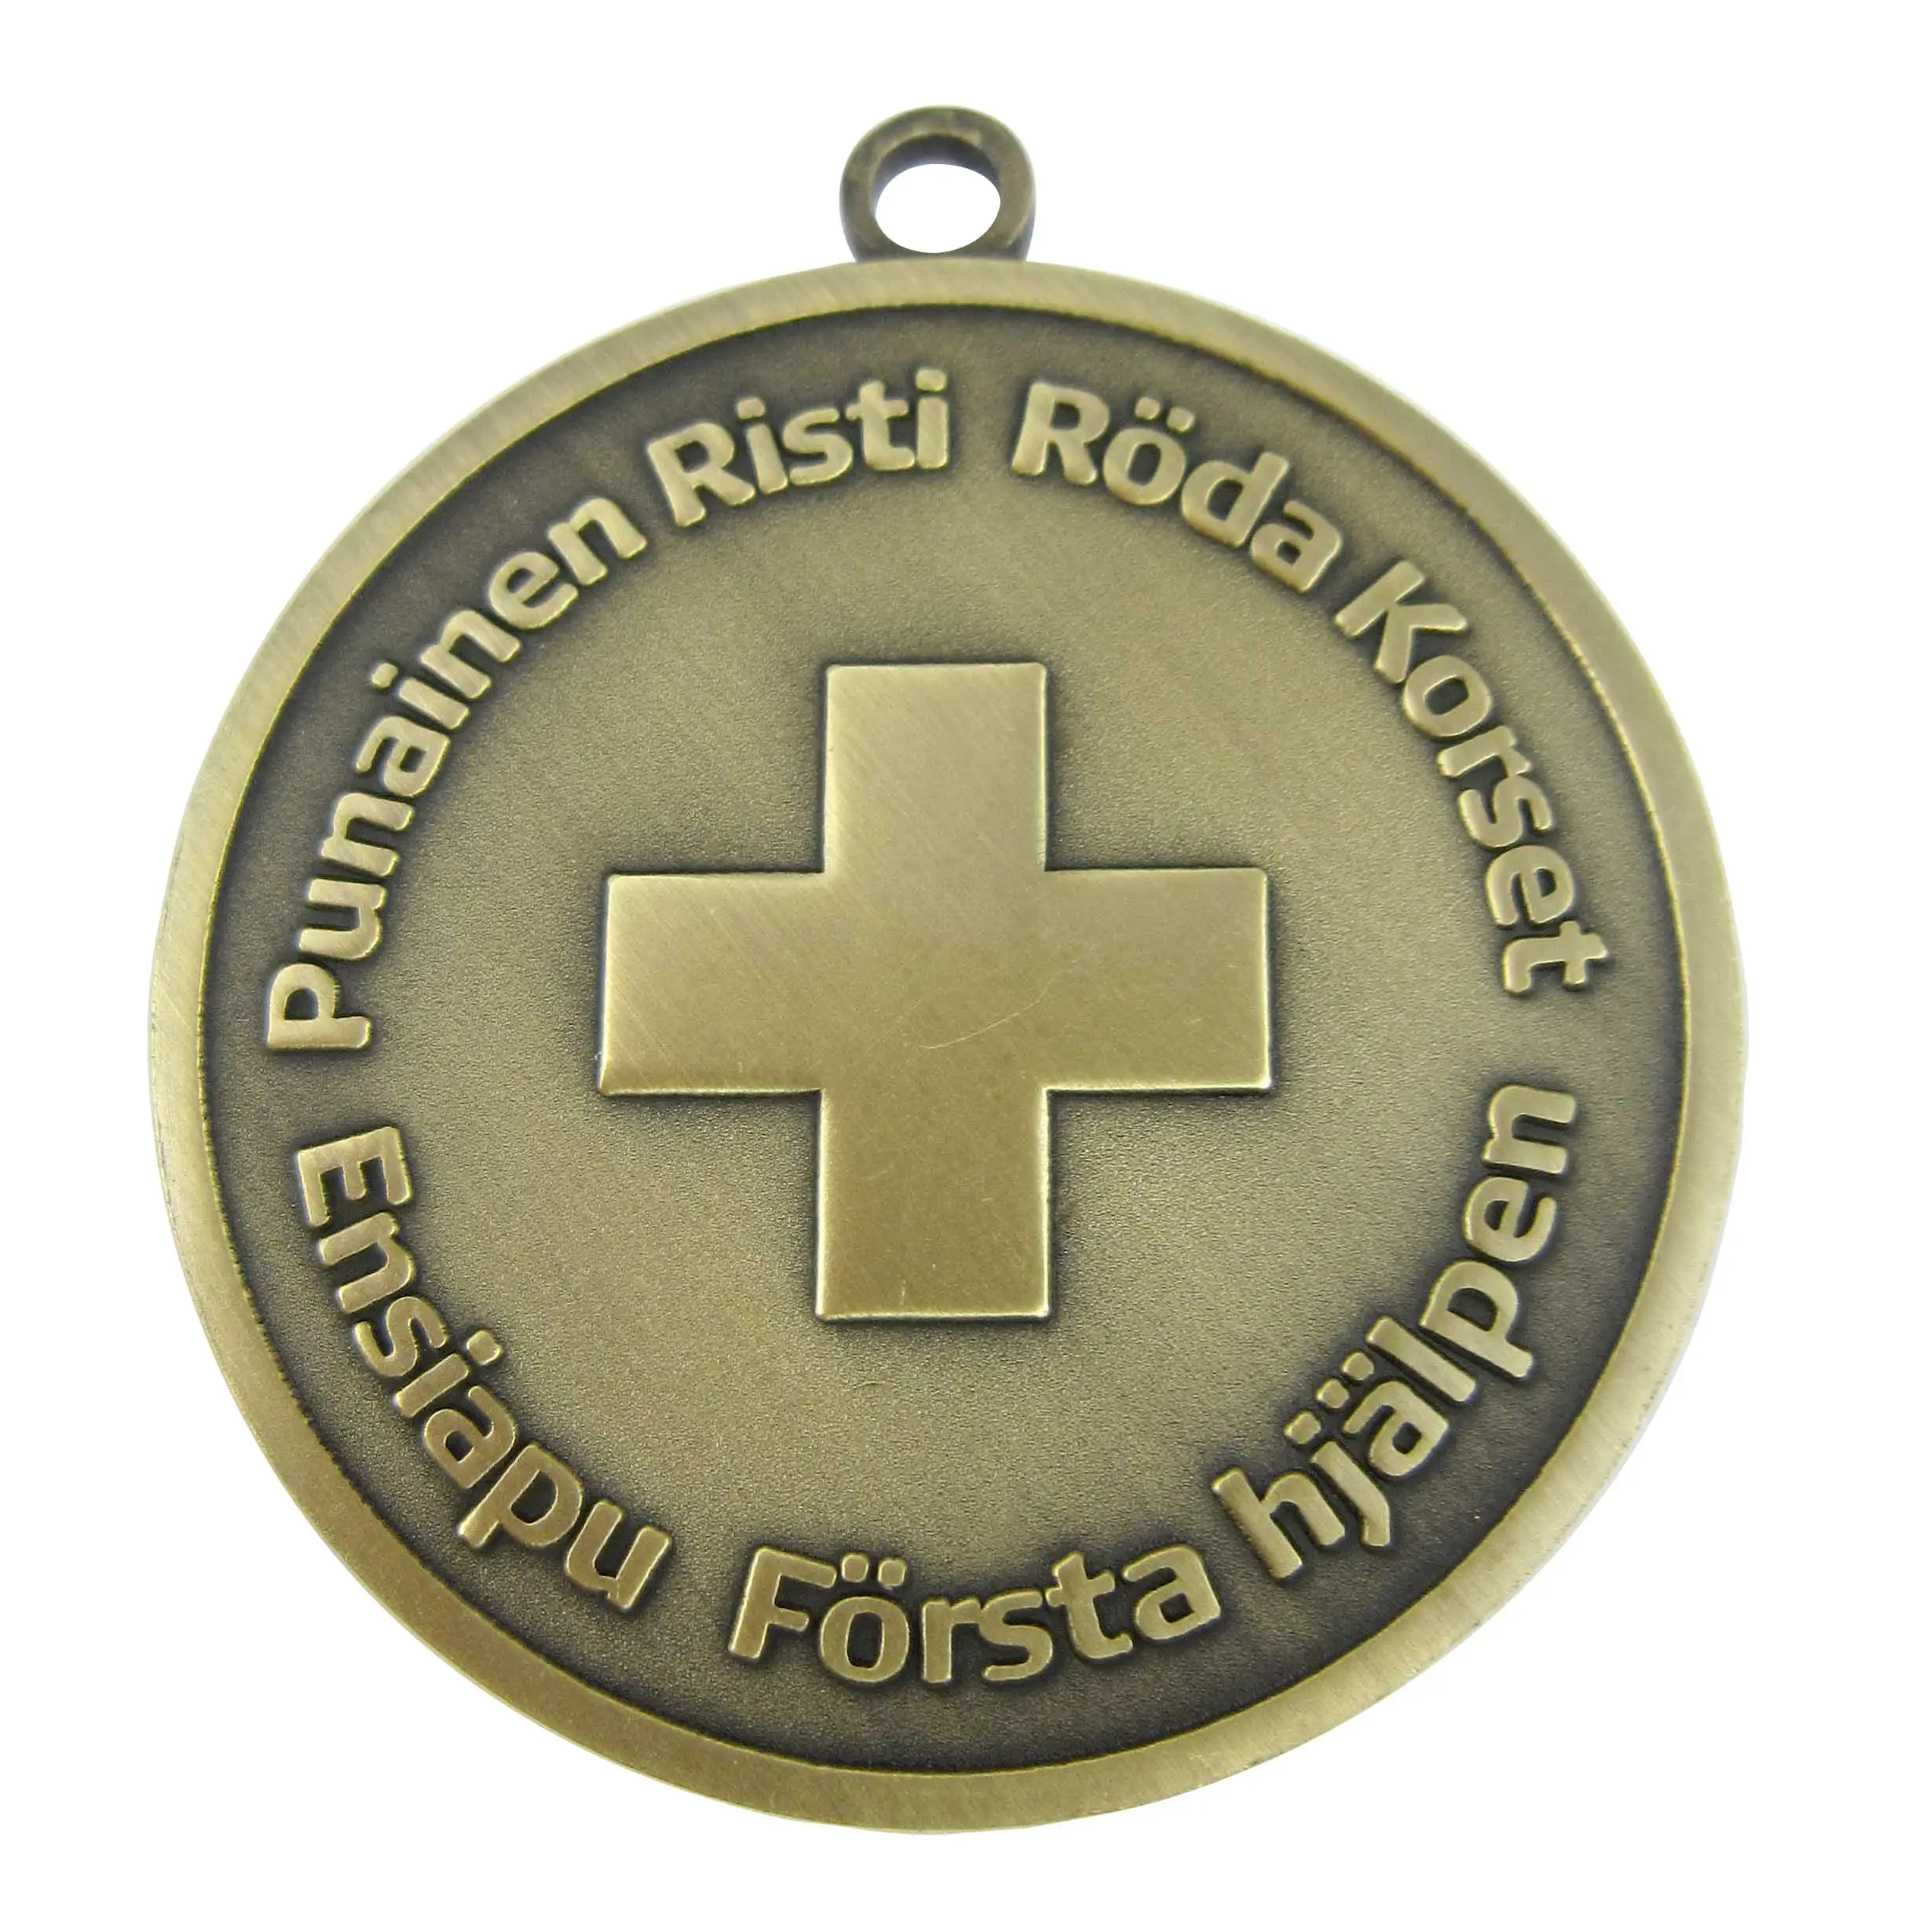 ميدالية ZhongShan بالجملة من مصنع التشغيل مع شريط ميدالية تخرج لمرحلة ما قبل المدرسة تصميمات مخصصة ومجانية ميداليات معدنية من سبائك الزنك